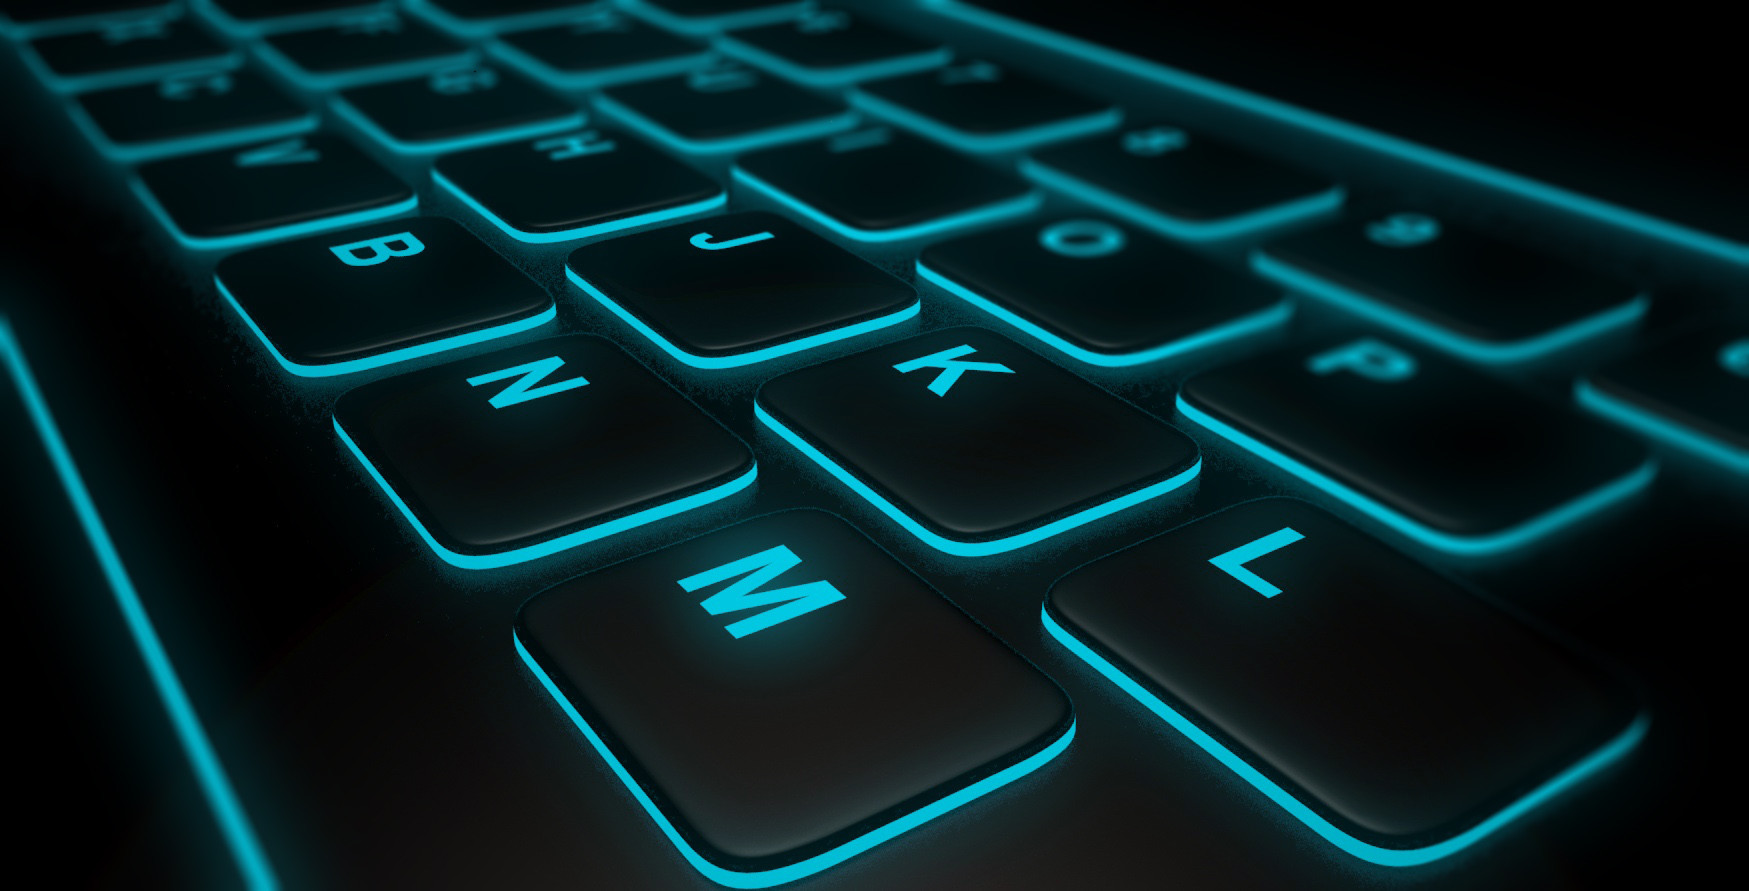 Neon Keyboard Wallpaper - Computer Keyboard , HD Wallpaper & Backgrounds